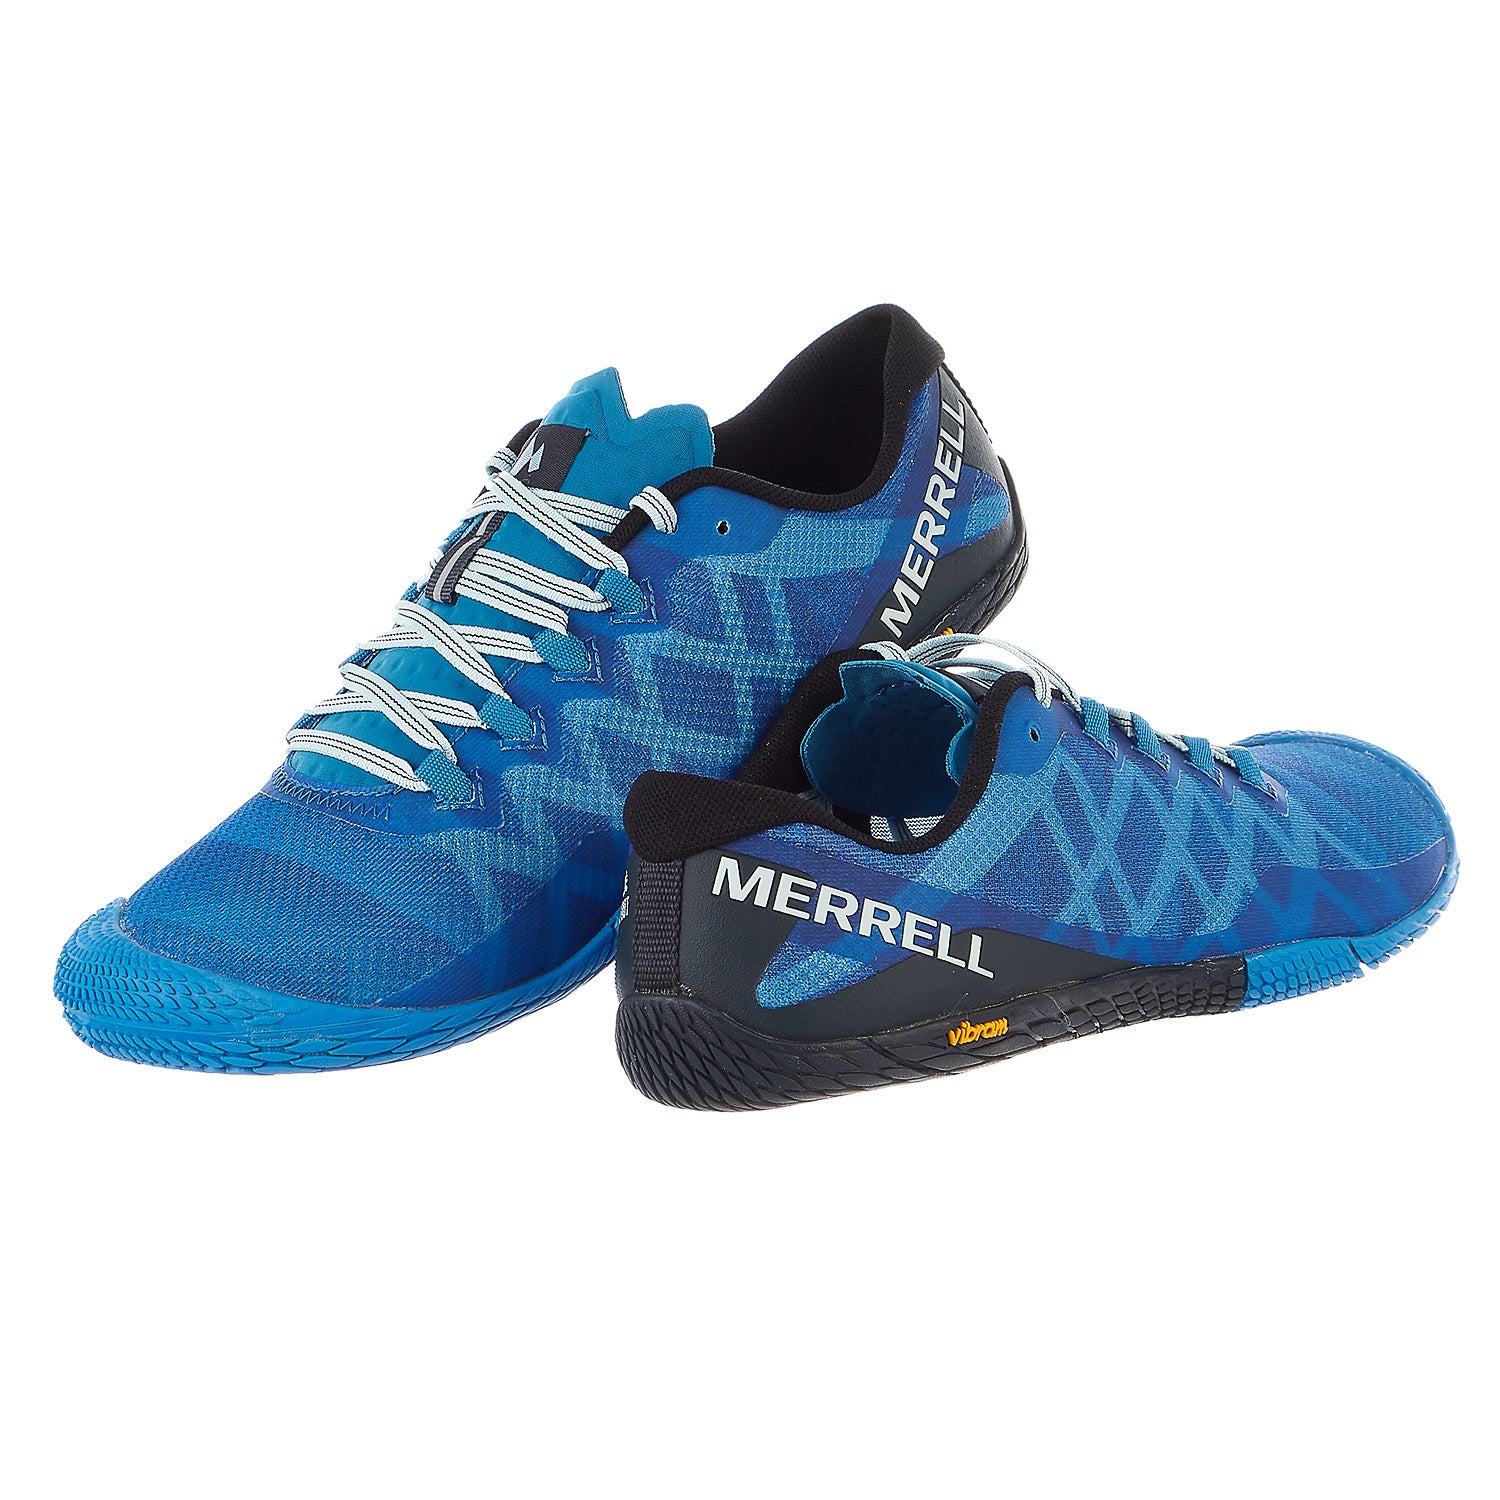 Merrell Vapor Glove 3 Cotton - Zapatos Barefoot Mujer Tienda - Morados